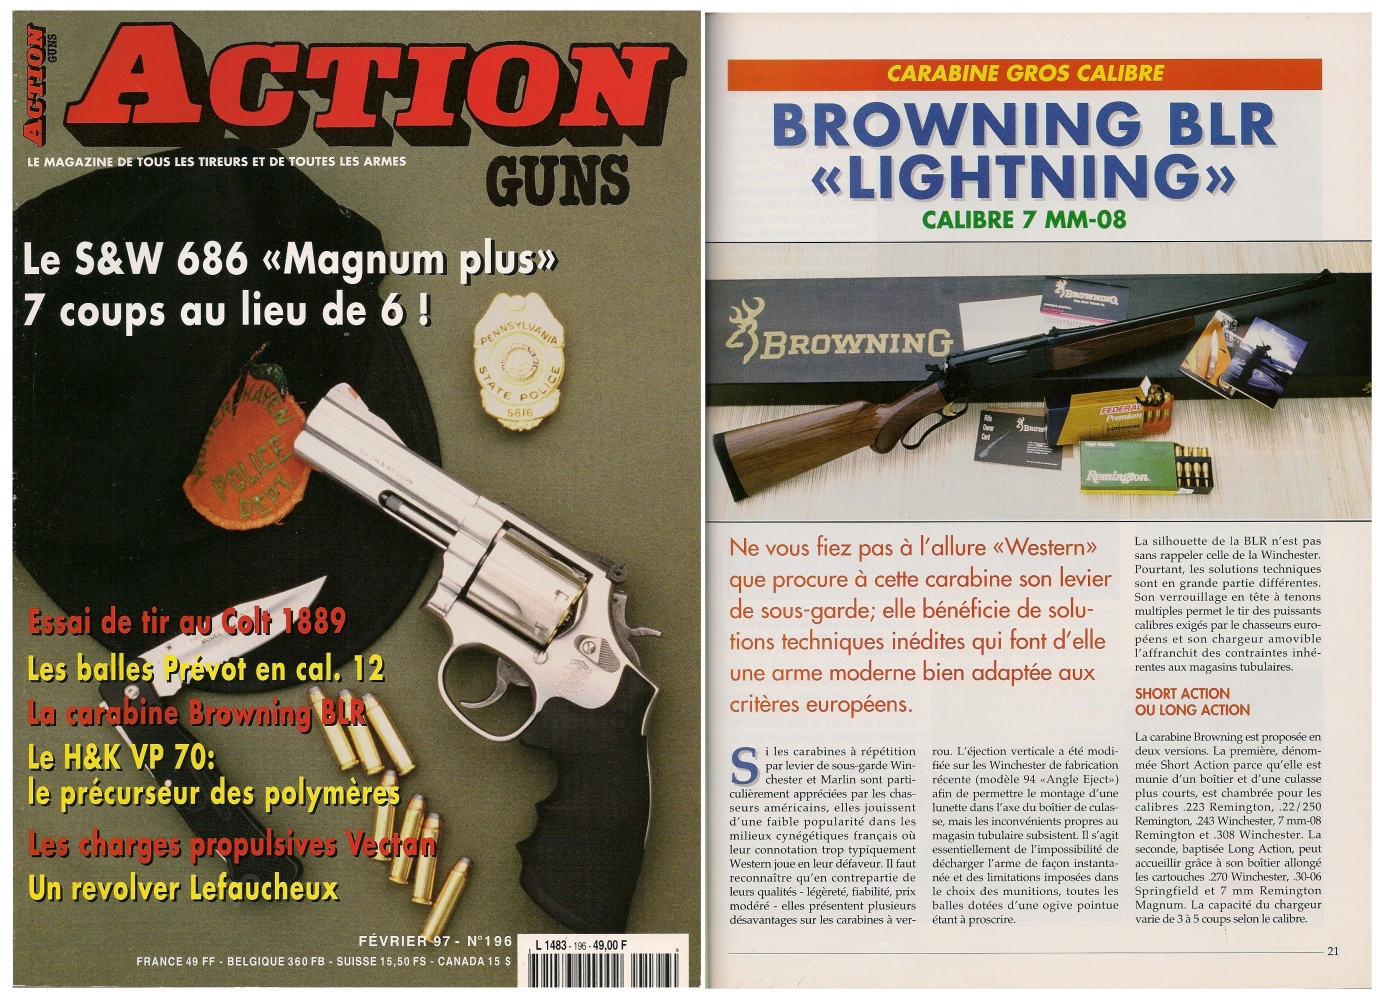 Le banc d'essai de la Browning BLR « Lightning » en calibre 7 mm-08 a été publié sur 5 pages dans le magazine Action Guns n° 196 (février 1997).